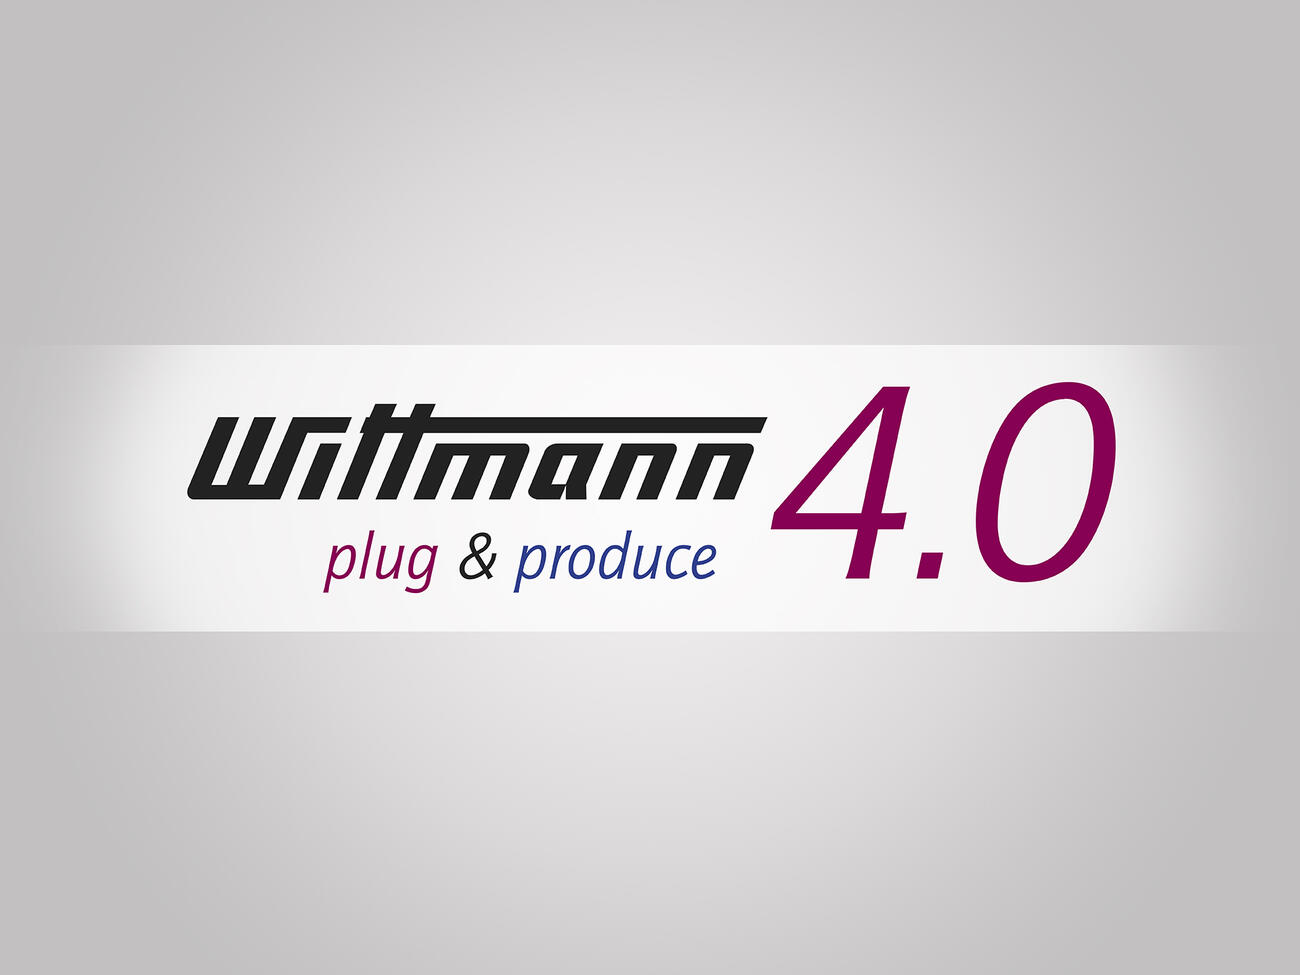 WITTMANN 4.0